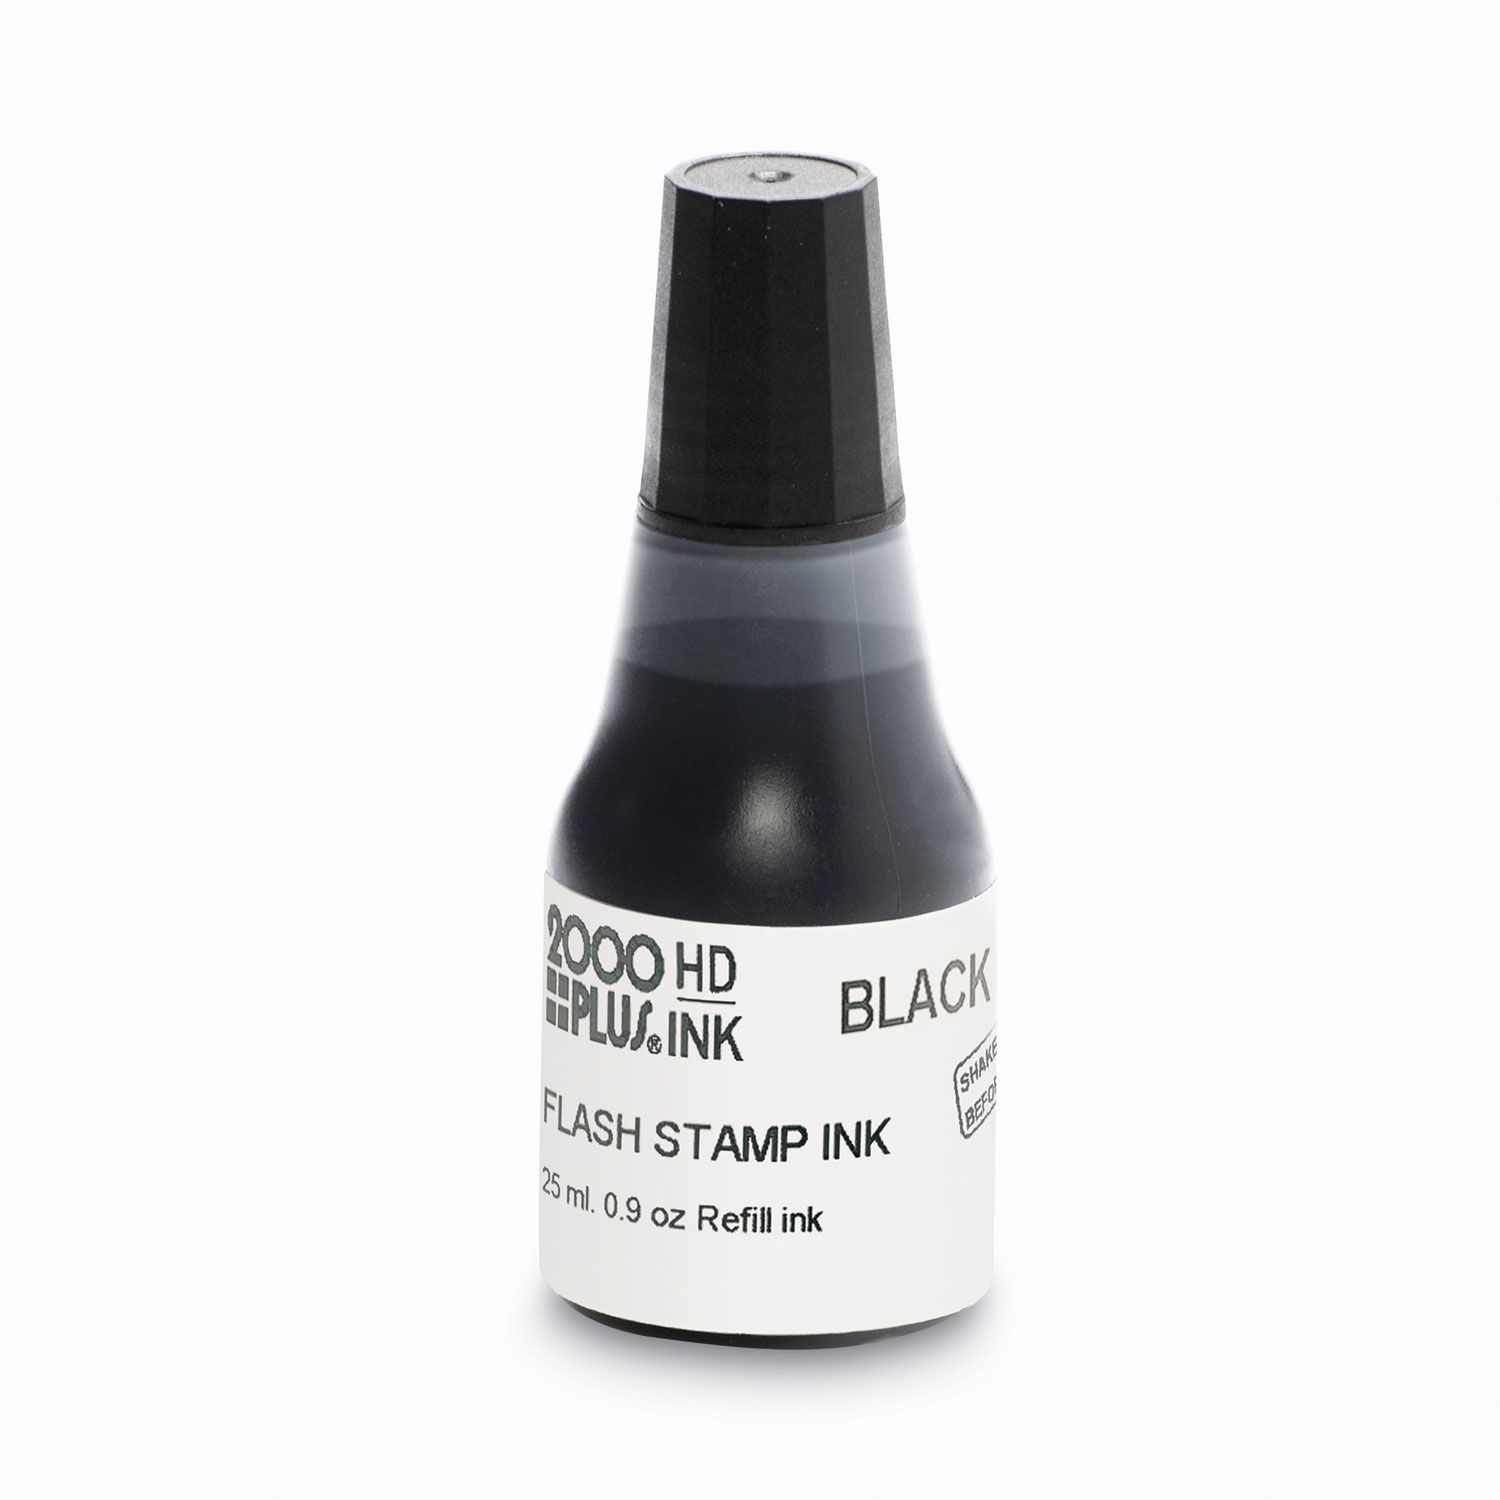 Pre-Ink High Definition Refill Ink 0.9 oz. Bottle, Black